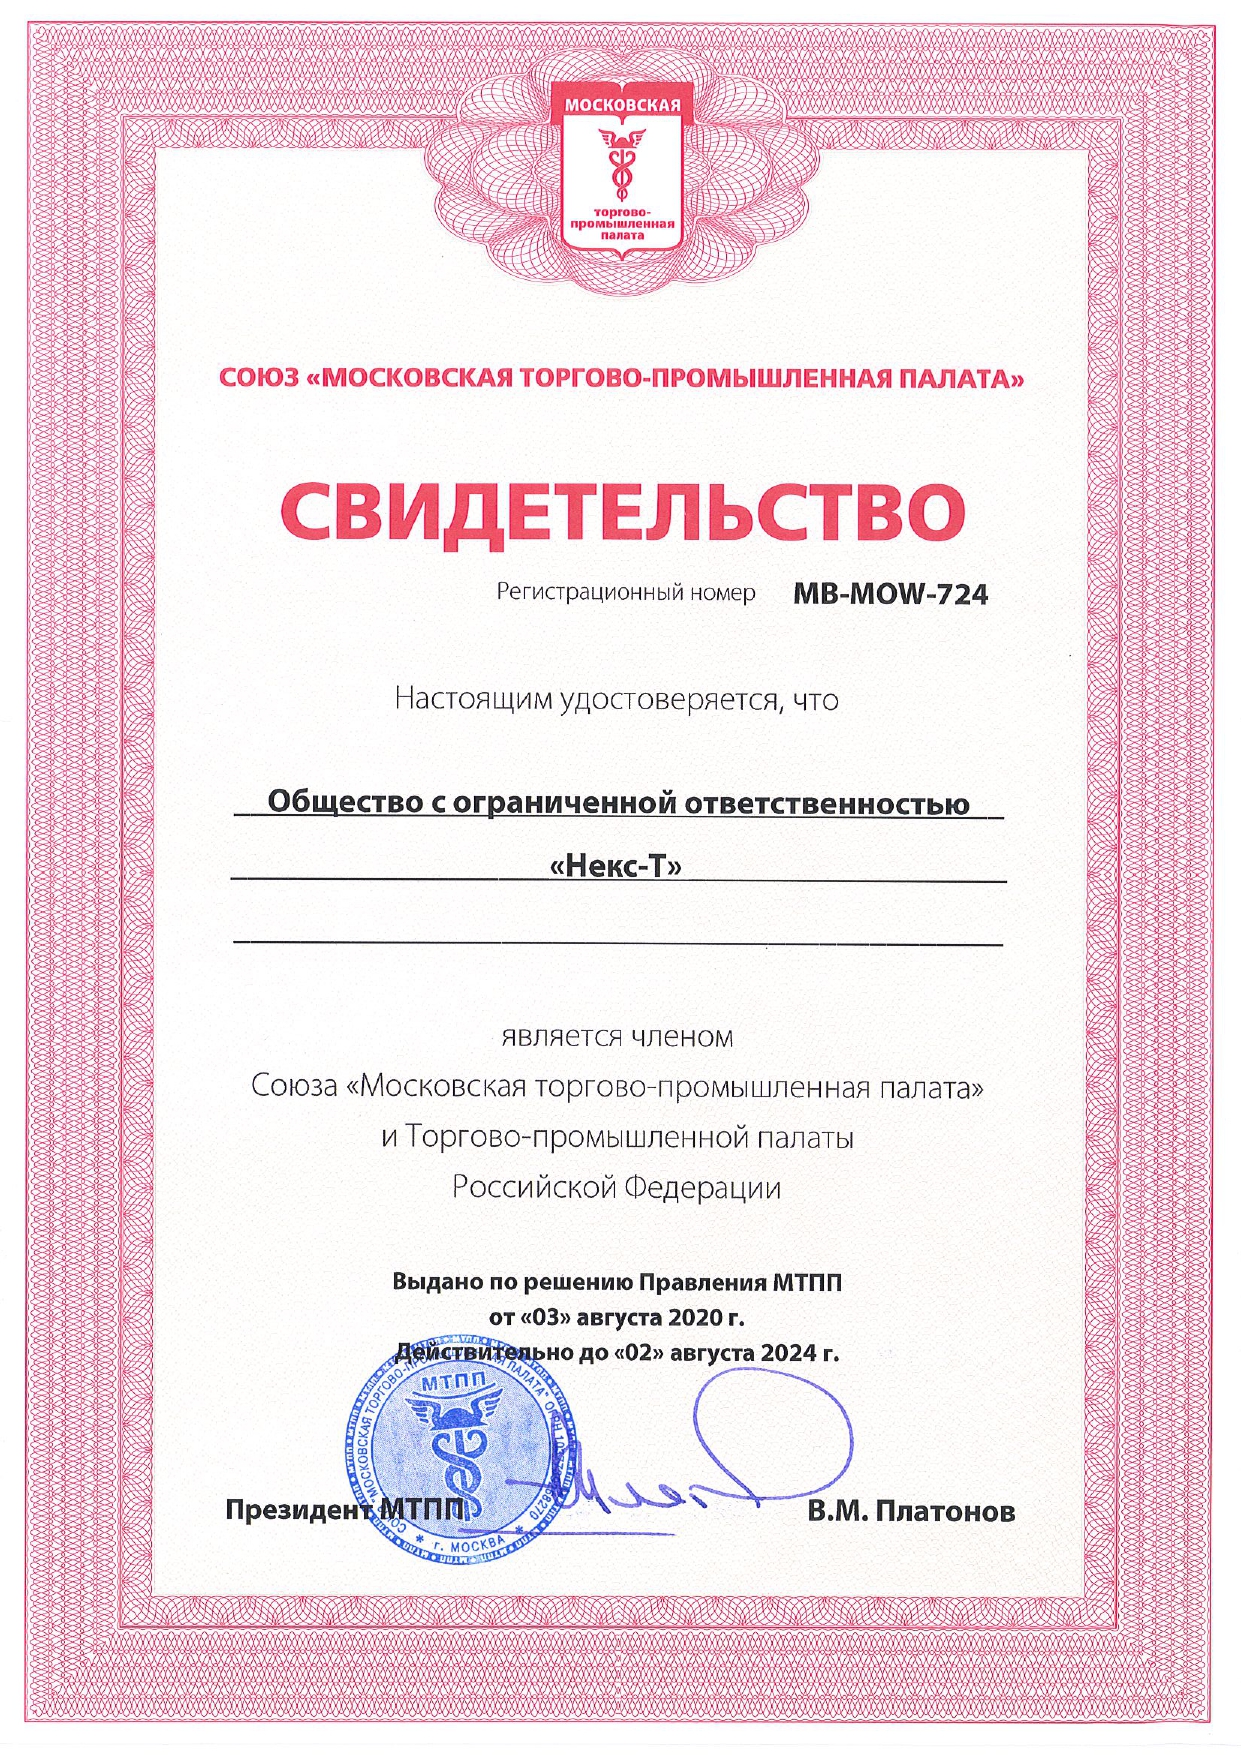 Свидетельство от Союза Московская торгово-промышленная палата и Торгово-промышленной палаты РФ